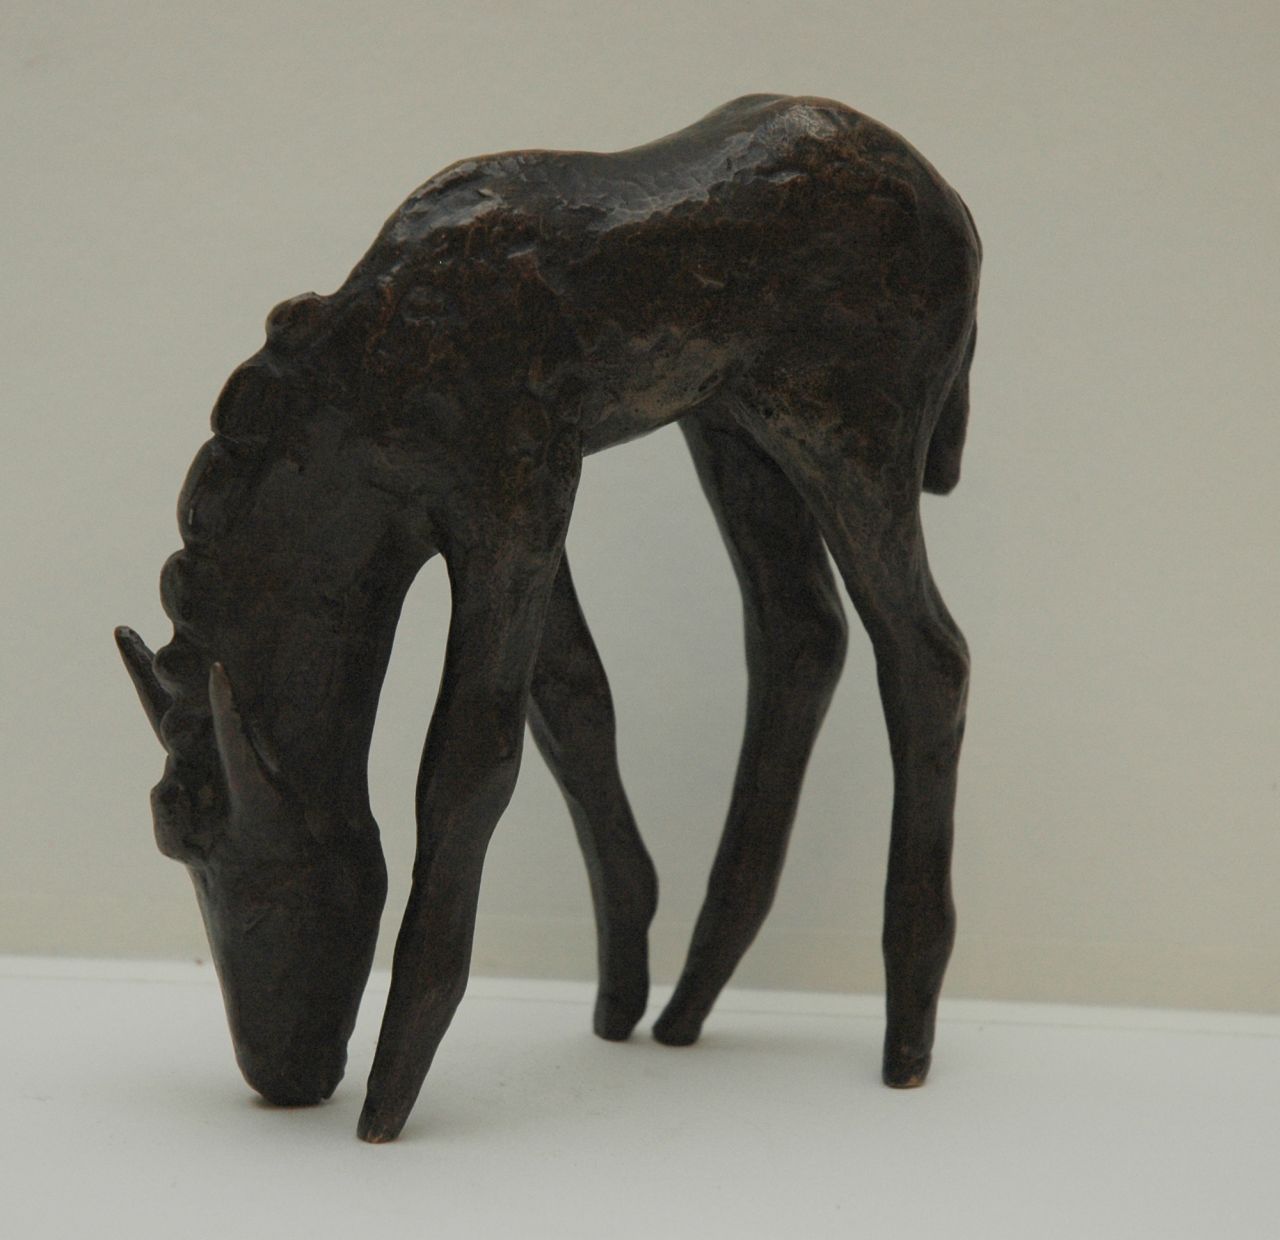 Baisch E.  | Ernst Baisch, Donkey foal, Patinierte Bronze 14,0 x 10,0 cm, signed with initials on nose